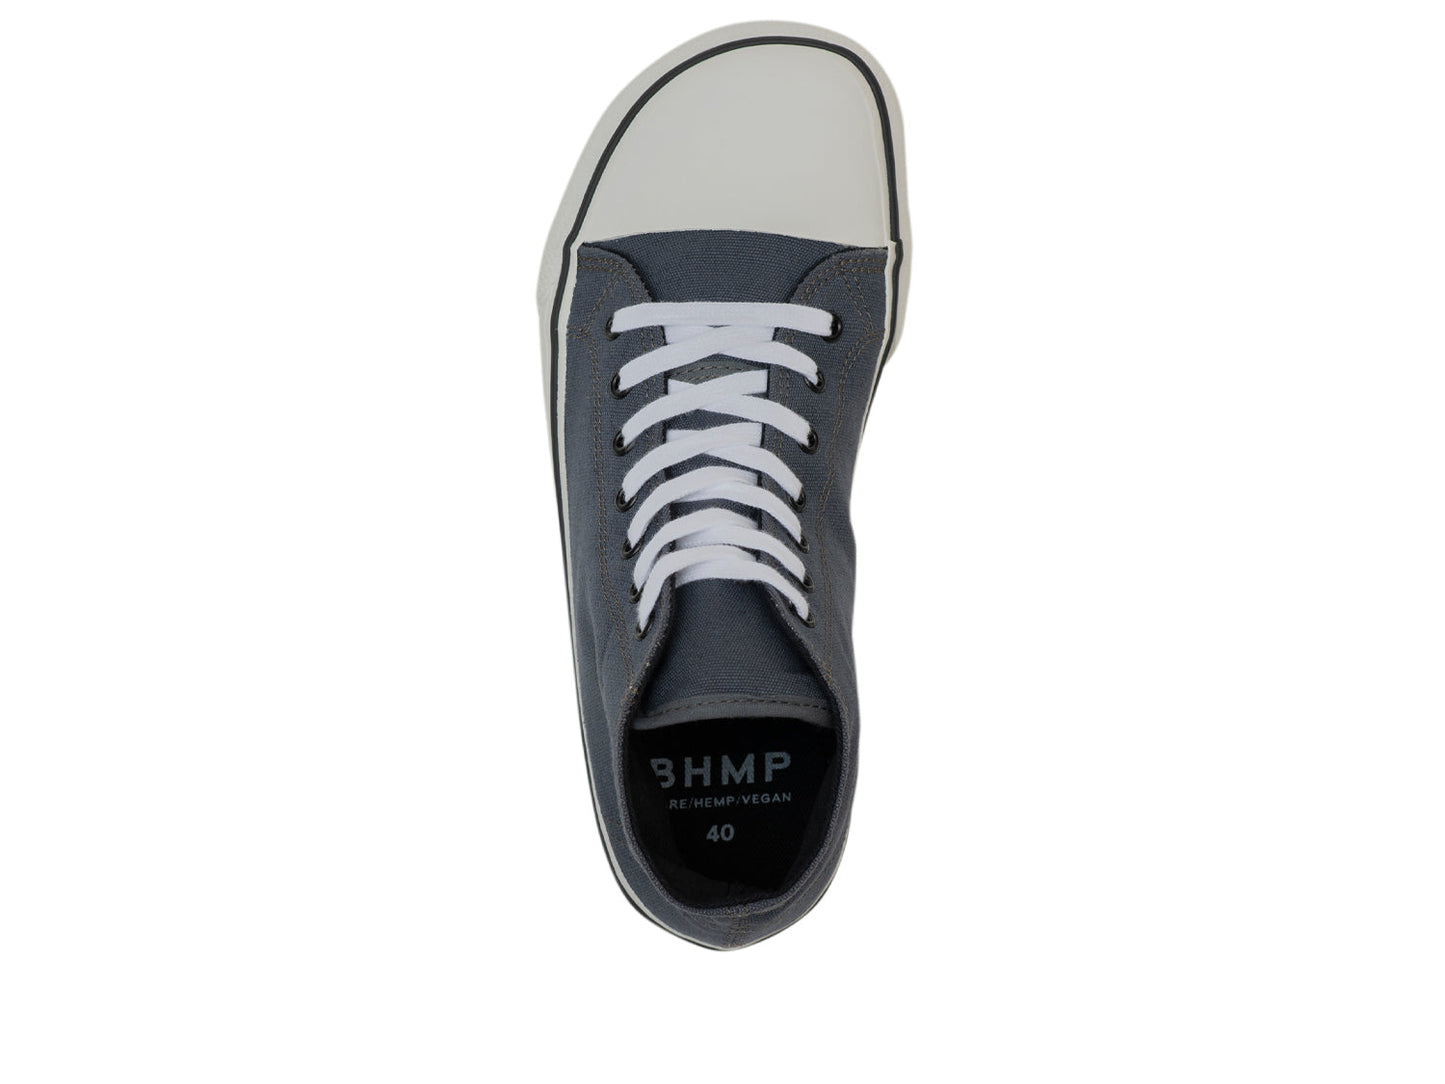 Bohempia Orik 2.0 barfods converse sneakers til kvinder og mænd i farven grey-white, top